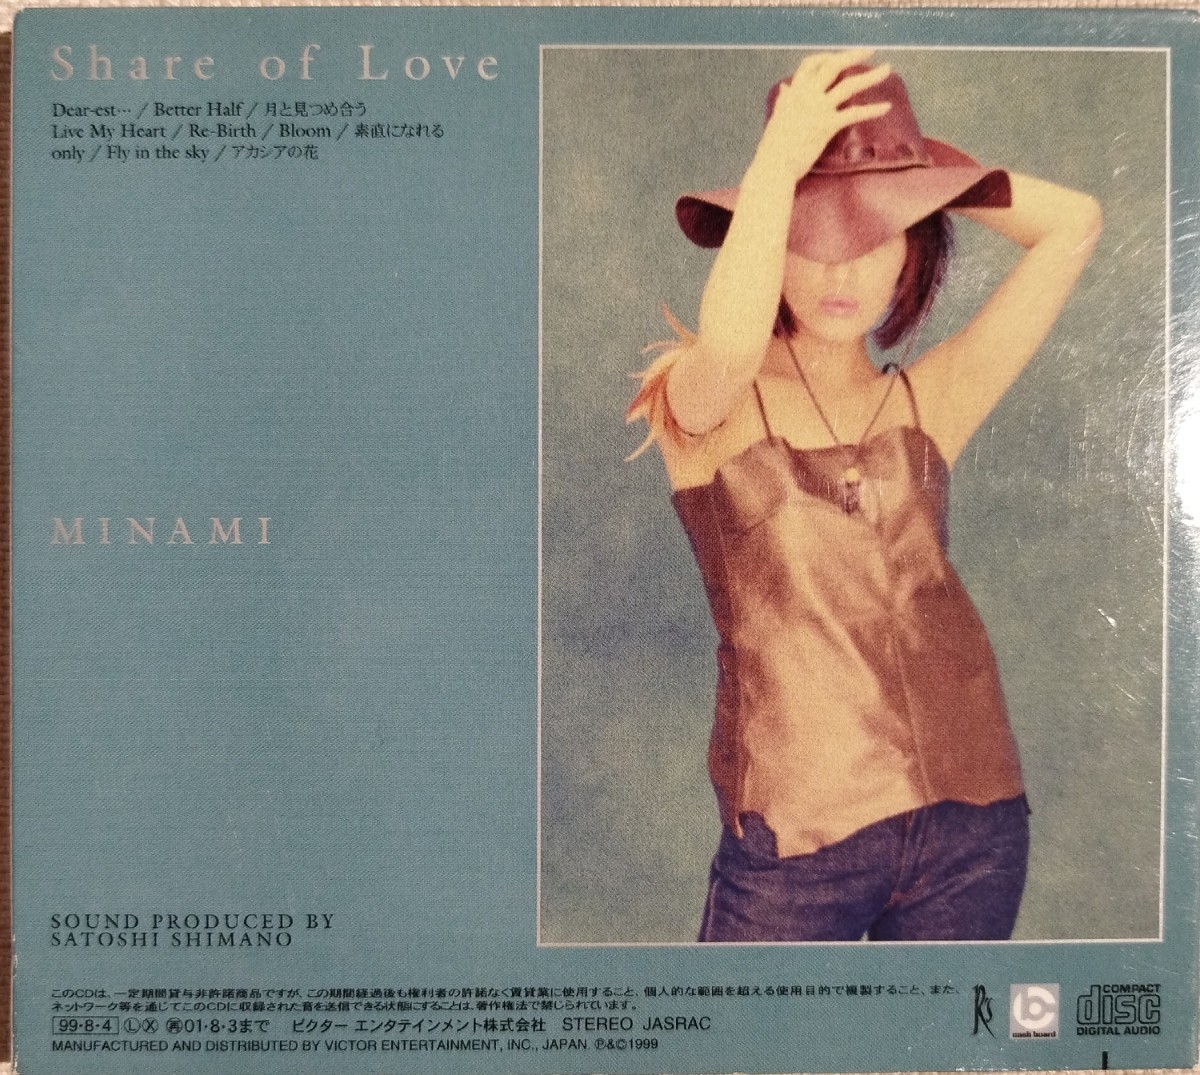 ♪Share of Love / MINAMI /ミナミ /シェア・オブ・ラブ/豪華ブックレット付き CD ファーストアルバム 島野聡 R&B_画像3